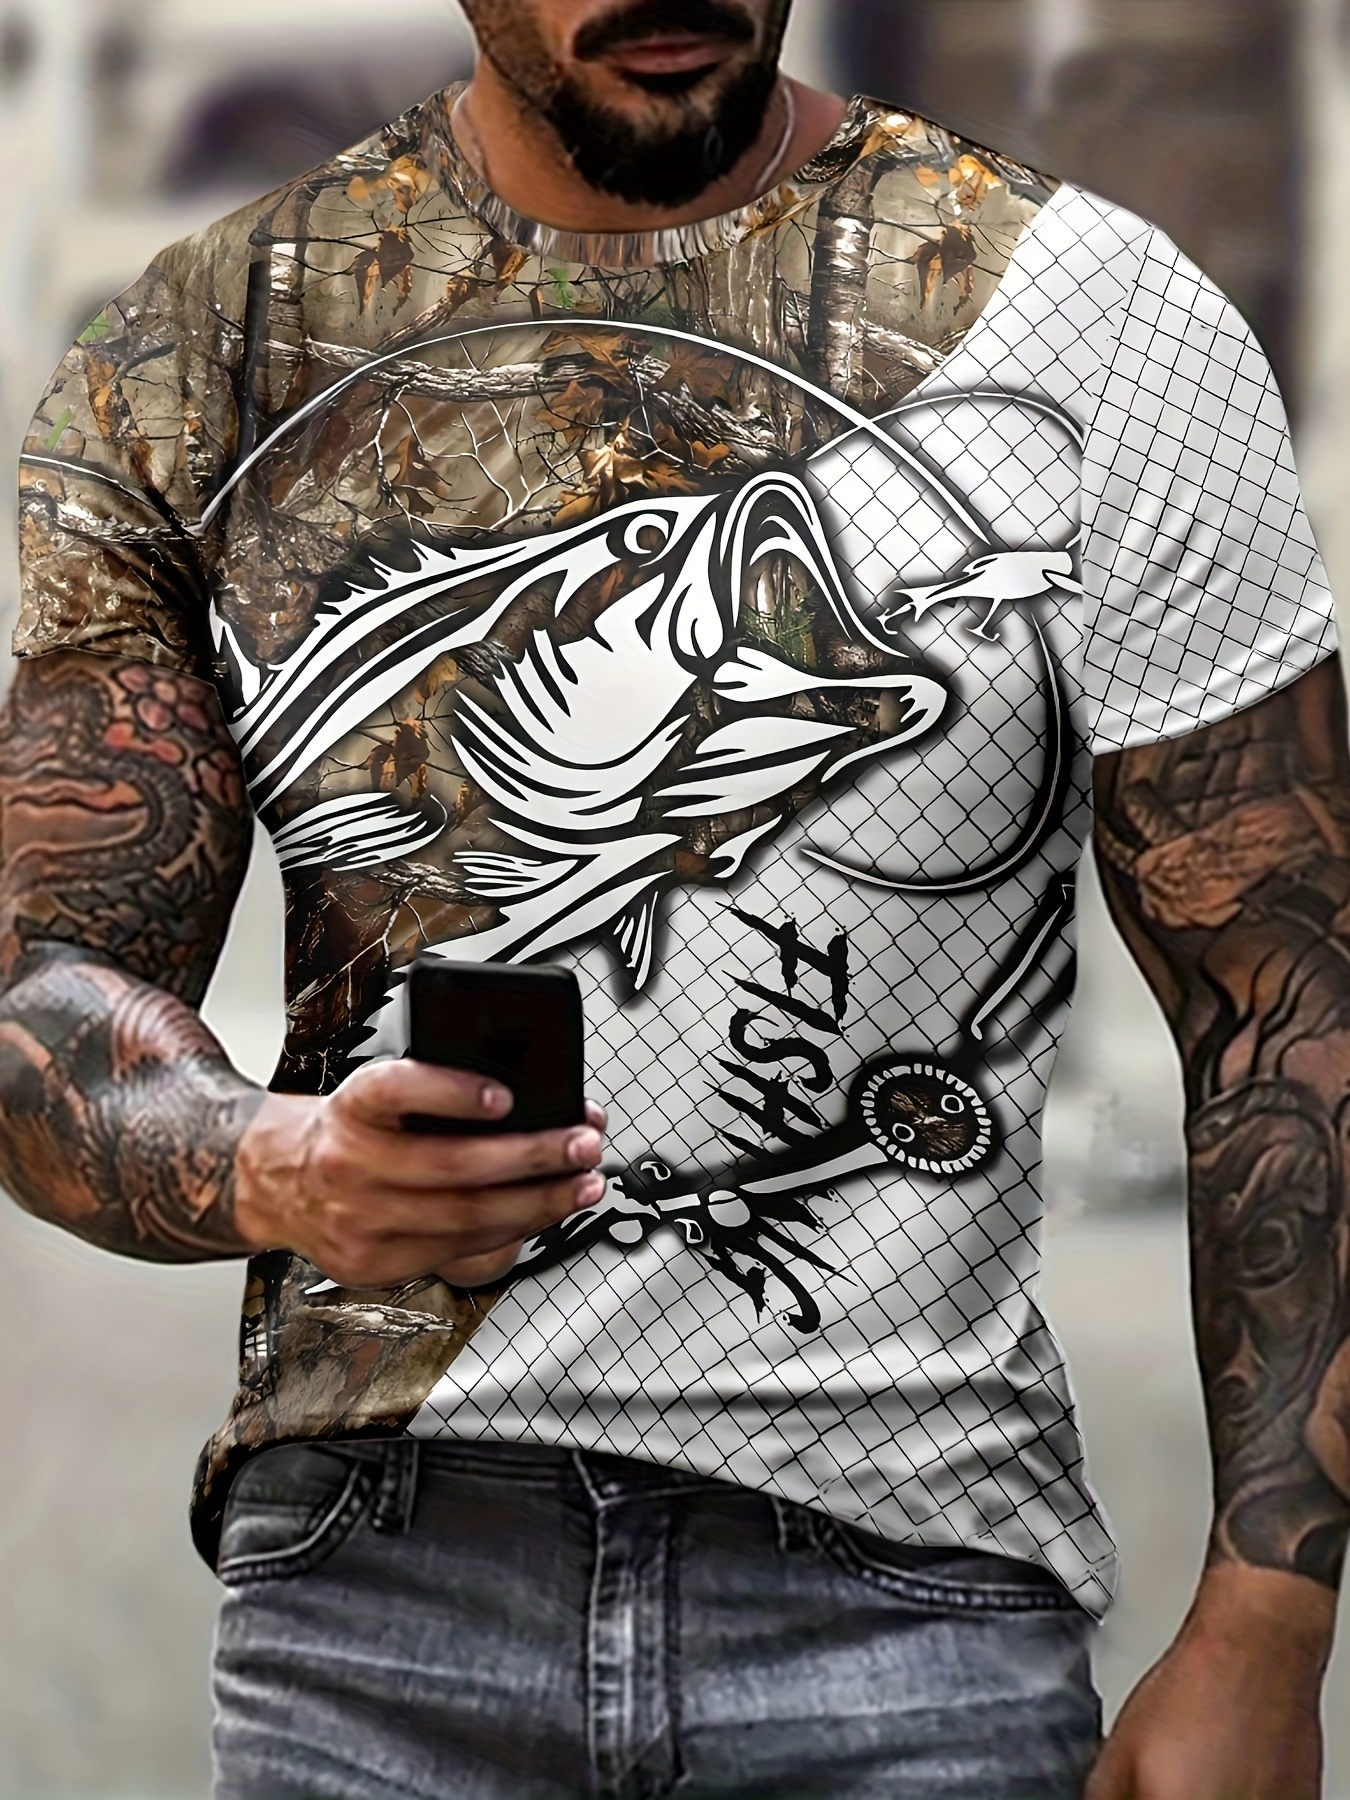 Funny Born To Go Fishing Bass Fish Fisherman Boys Kids PC - Buy t-shirt  designs